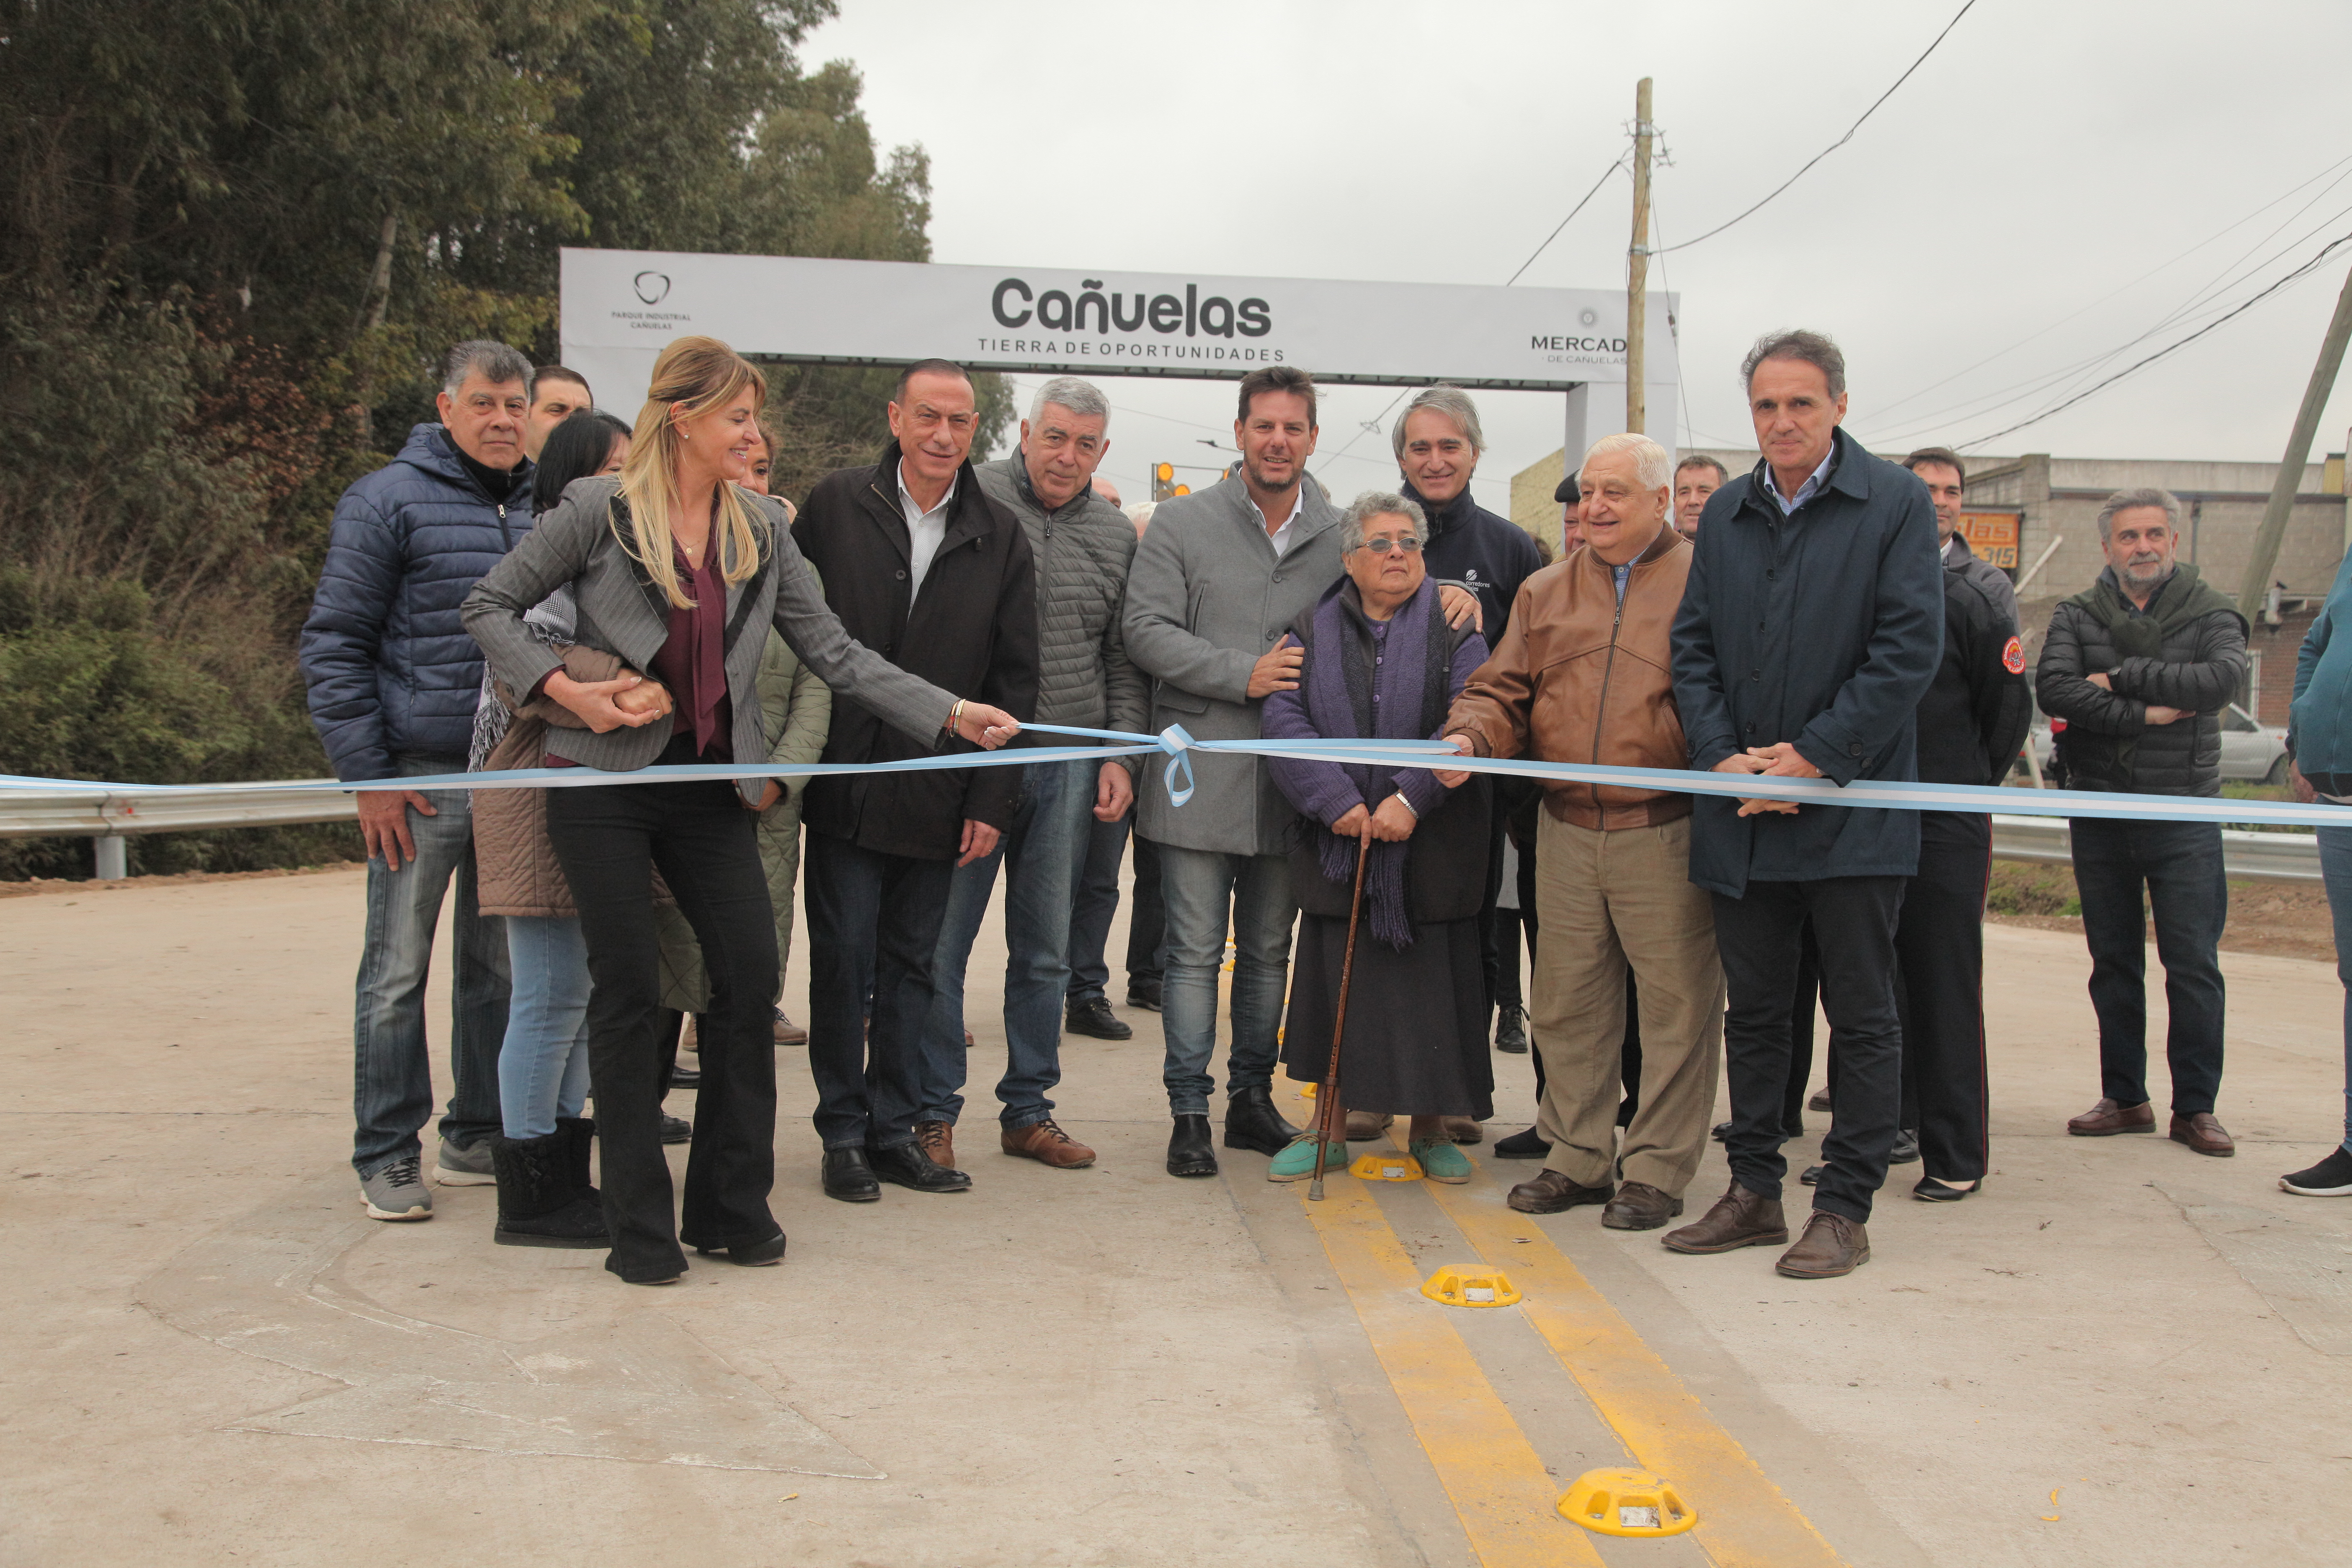 Inauguración oficial junto a vecinas y vecinos de Cañuelas.